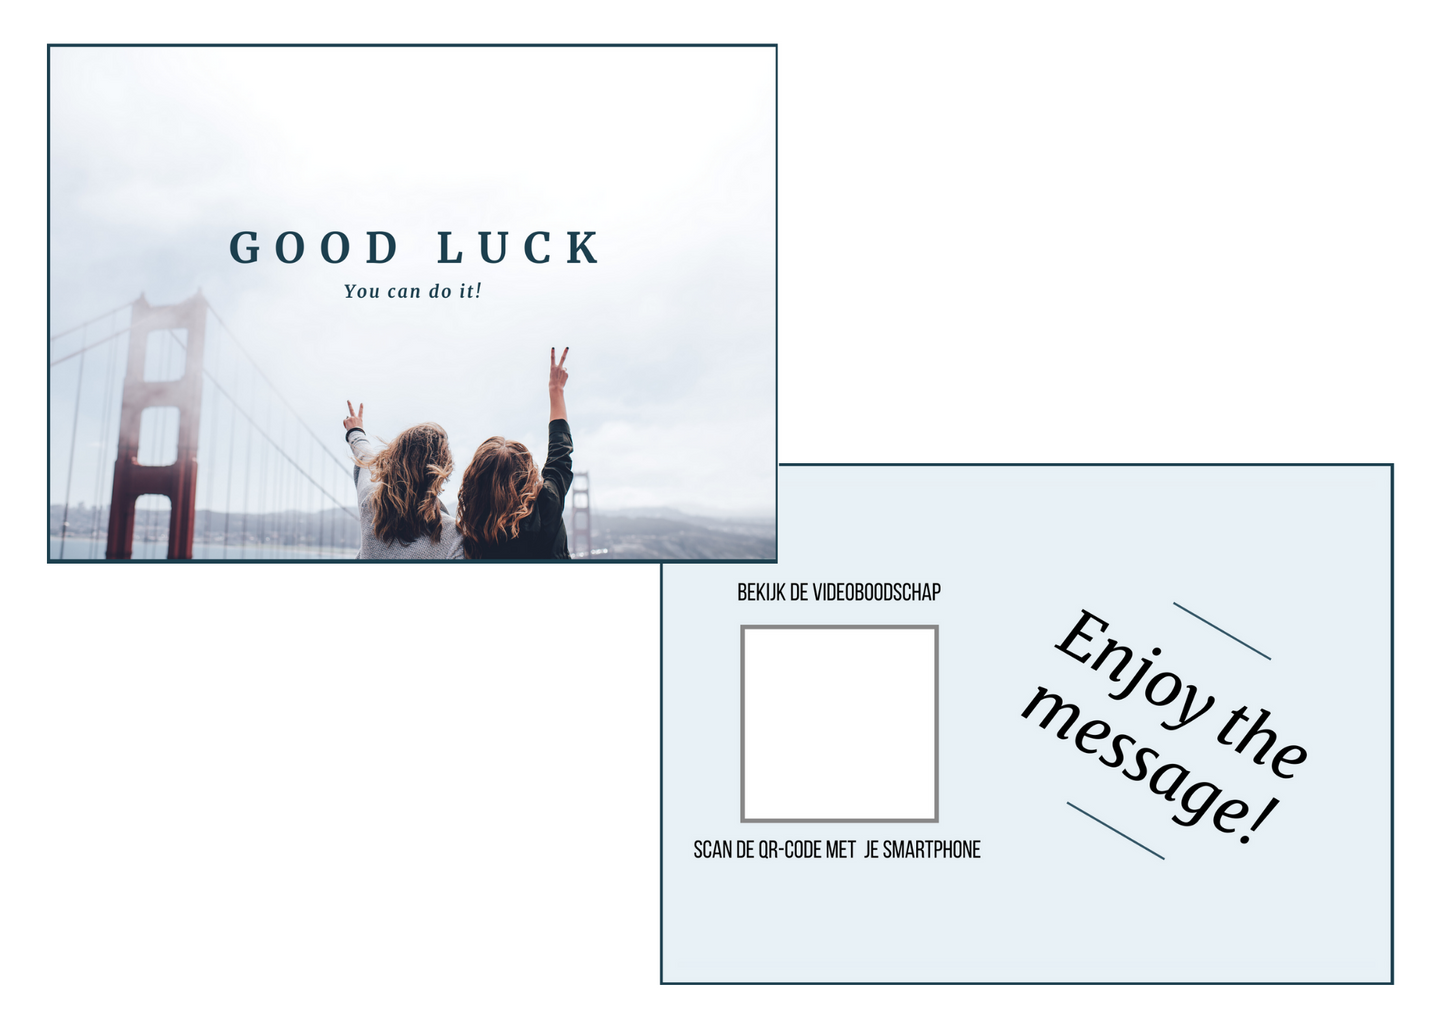 Good Luck kaart met videoboodschap